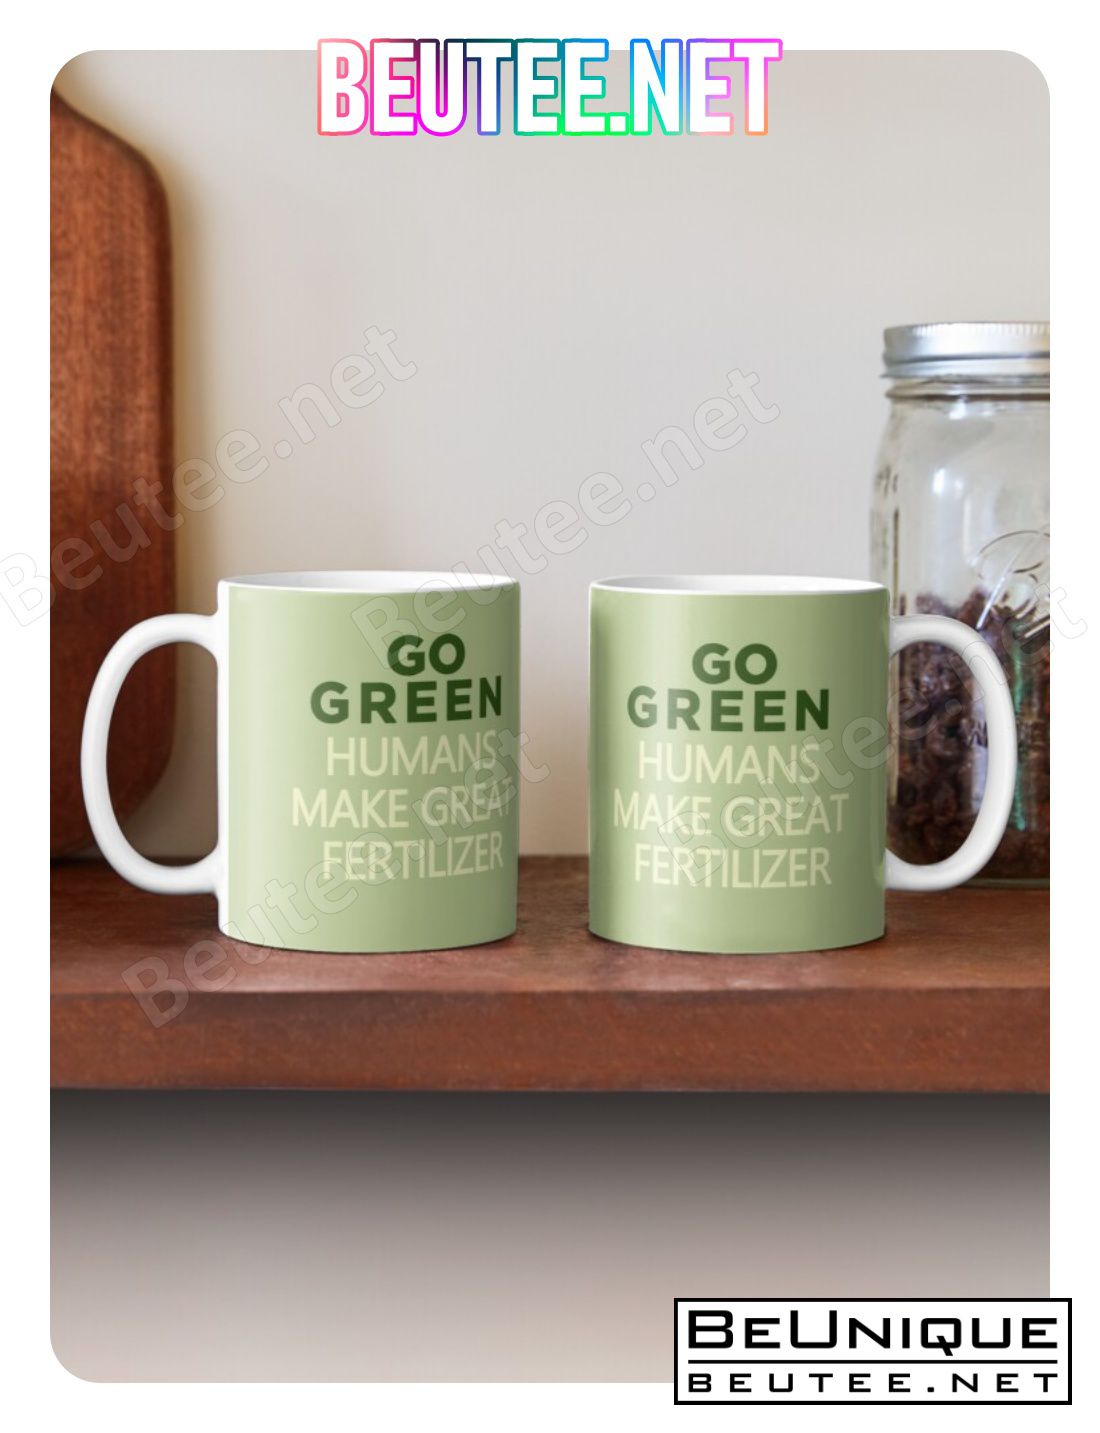 Go Green Humans Make Great Fertilizer. Coffee Mug